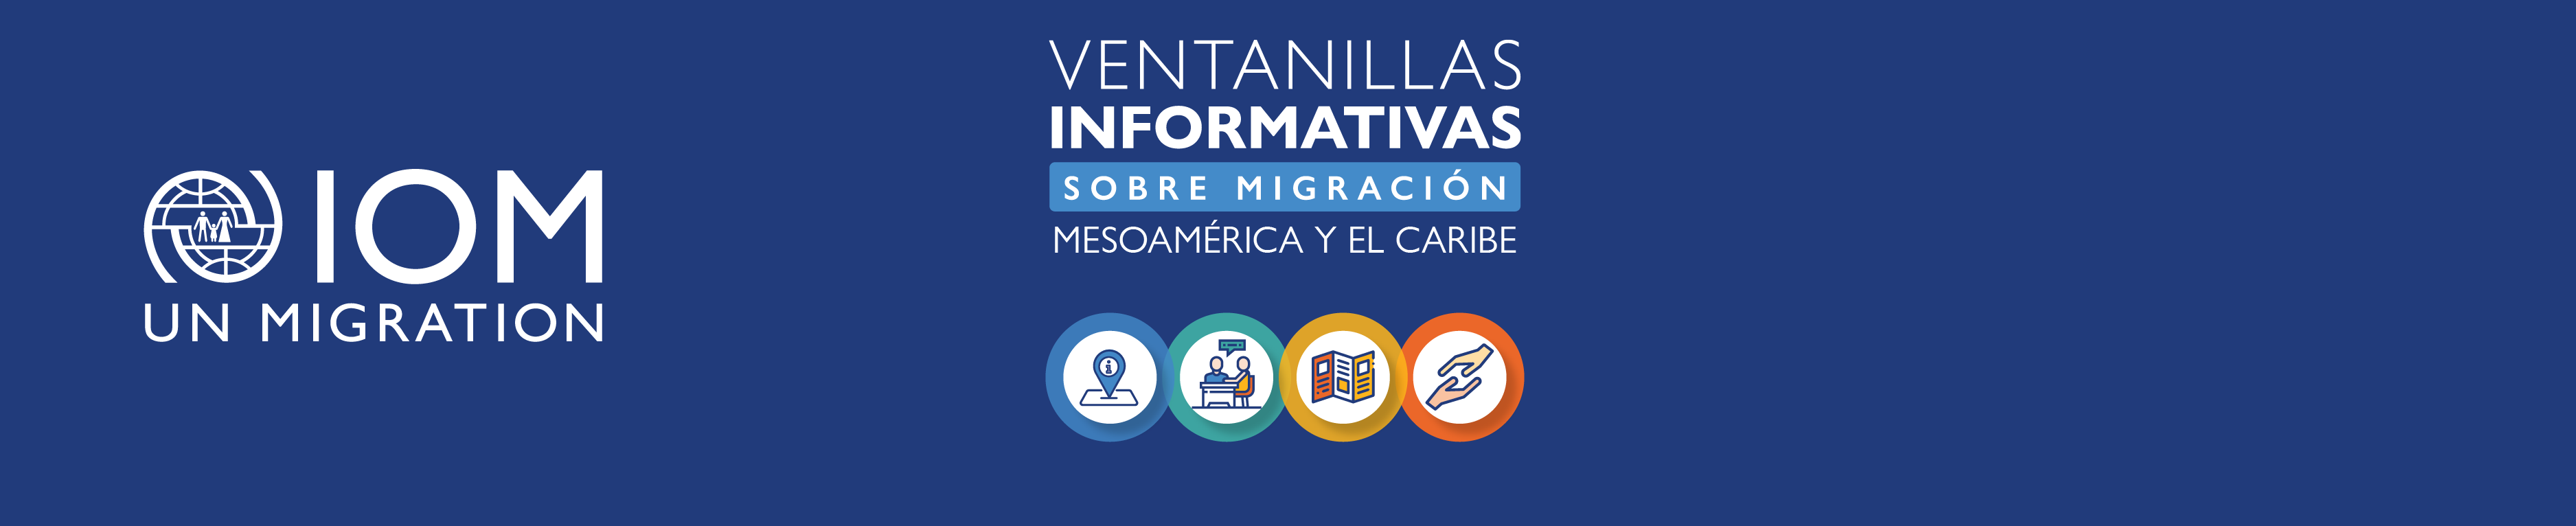 Ventanillas informativas sobre migración